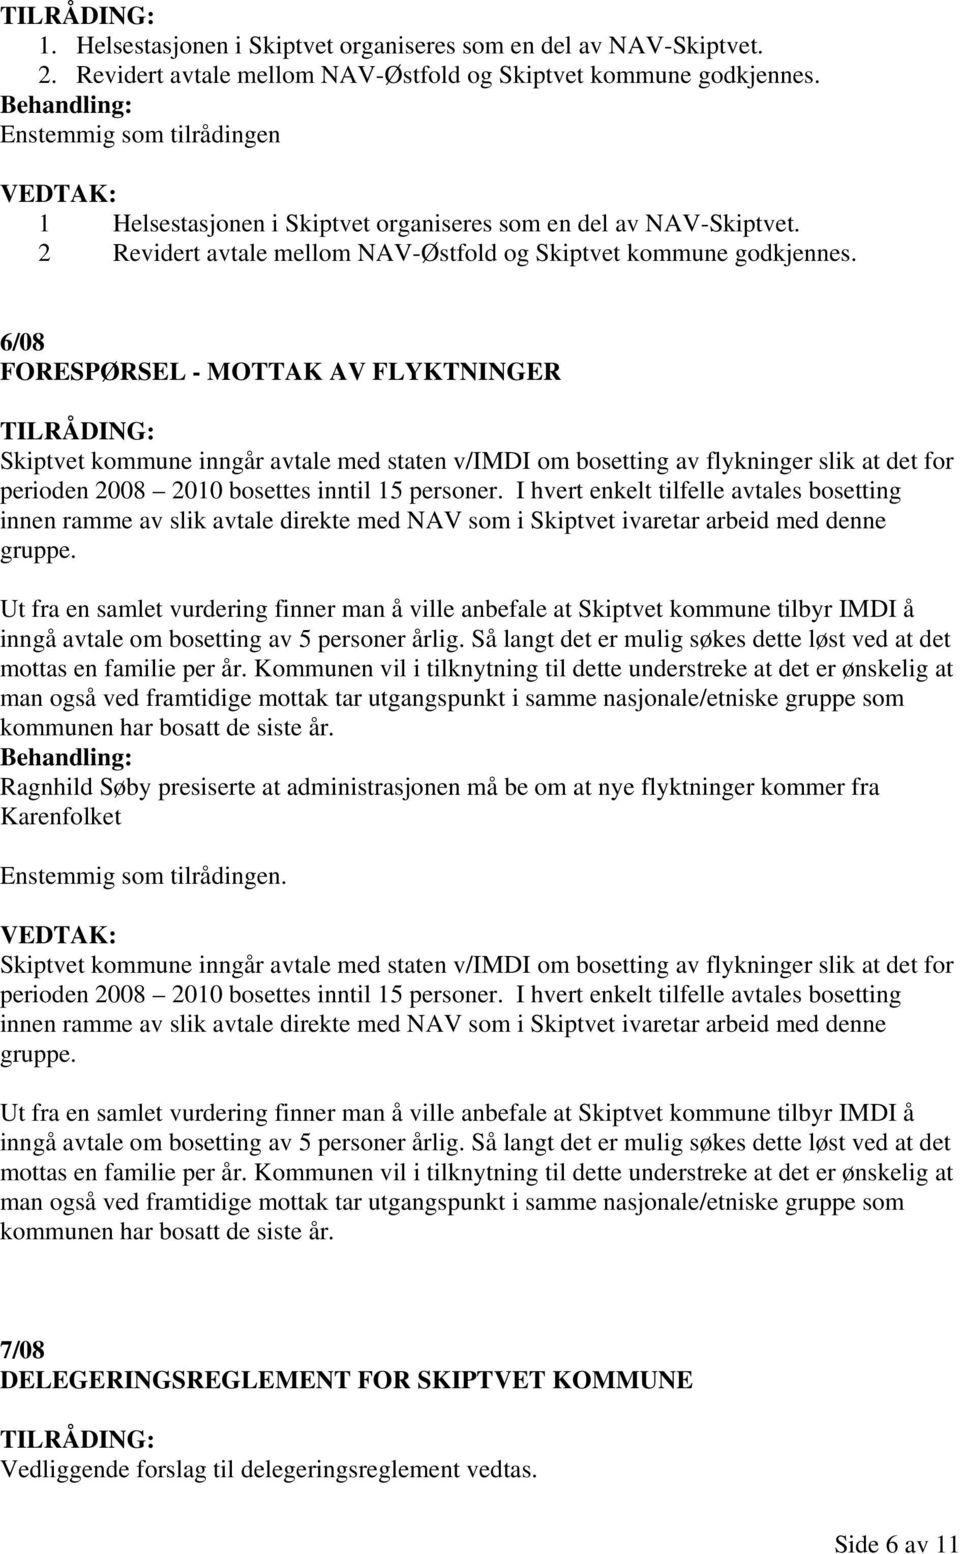 6/08 FORESPØRSEL - MOTTAK AV FLYKTNINGER Skiptvet kommune inngår avtale med staten v/imdi om bosetting av flykninger slik at det for perioden 2008 2010 bosettes inntil 15 personer.